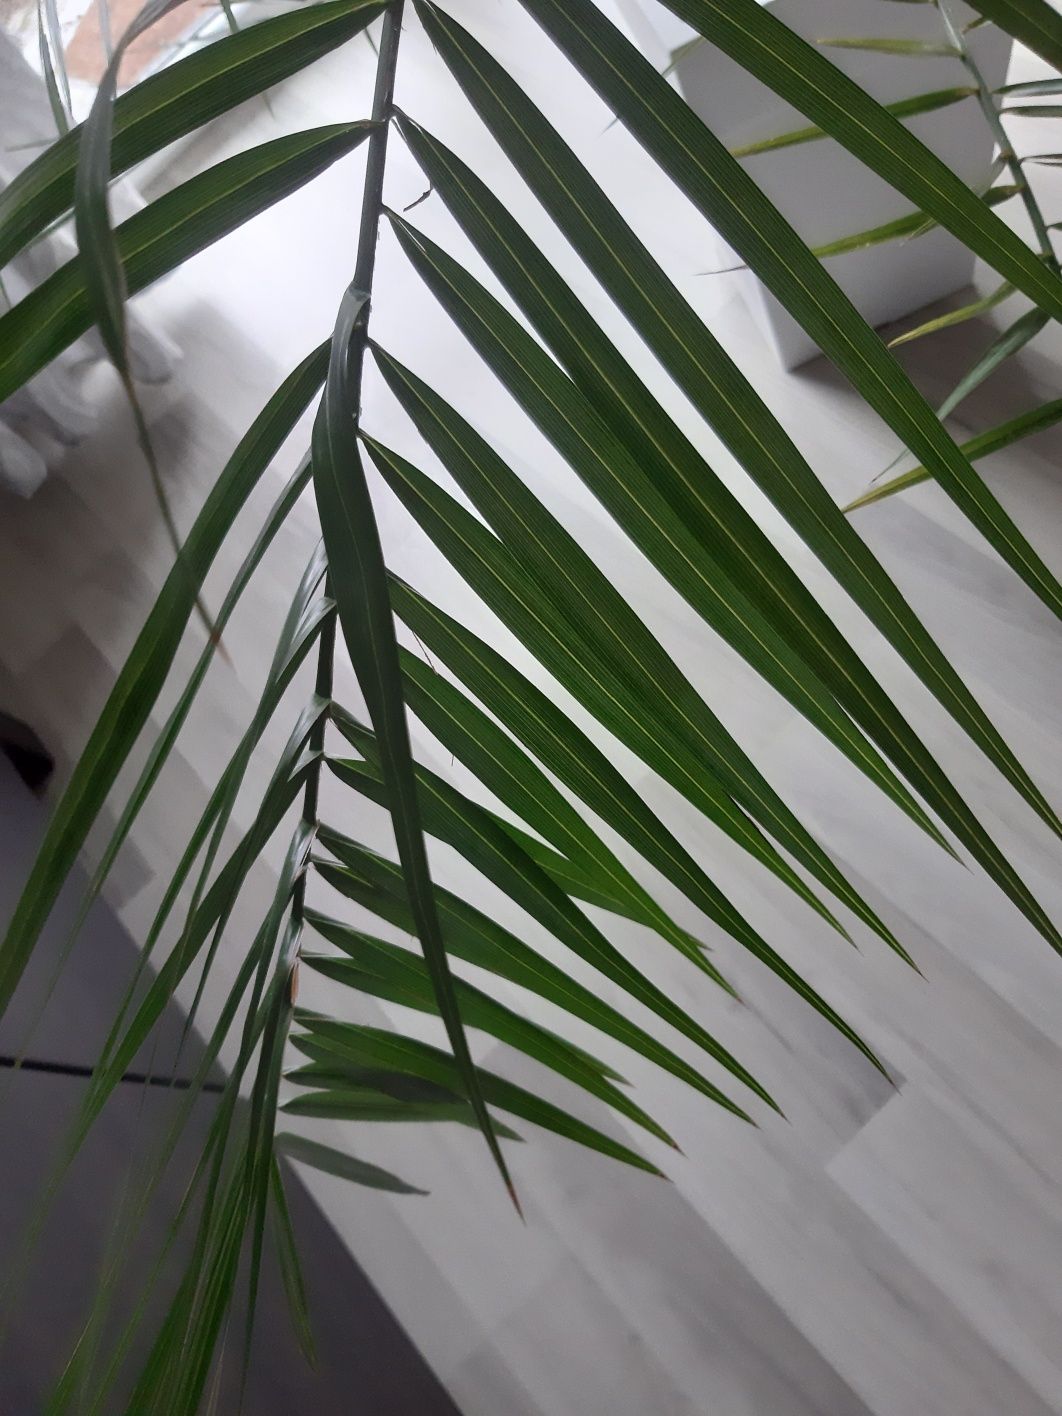 Palma daktylowiec kanaryjski